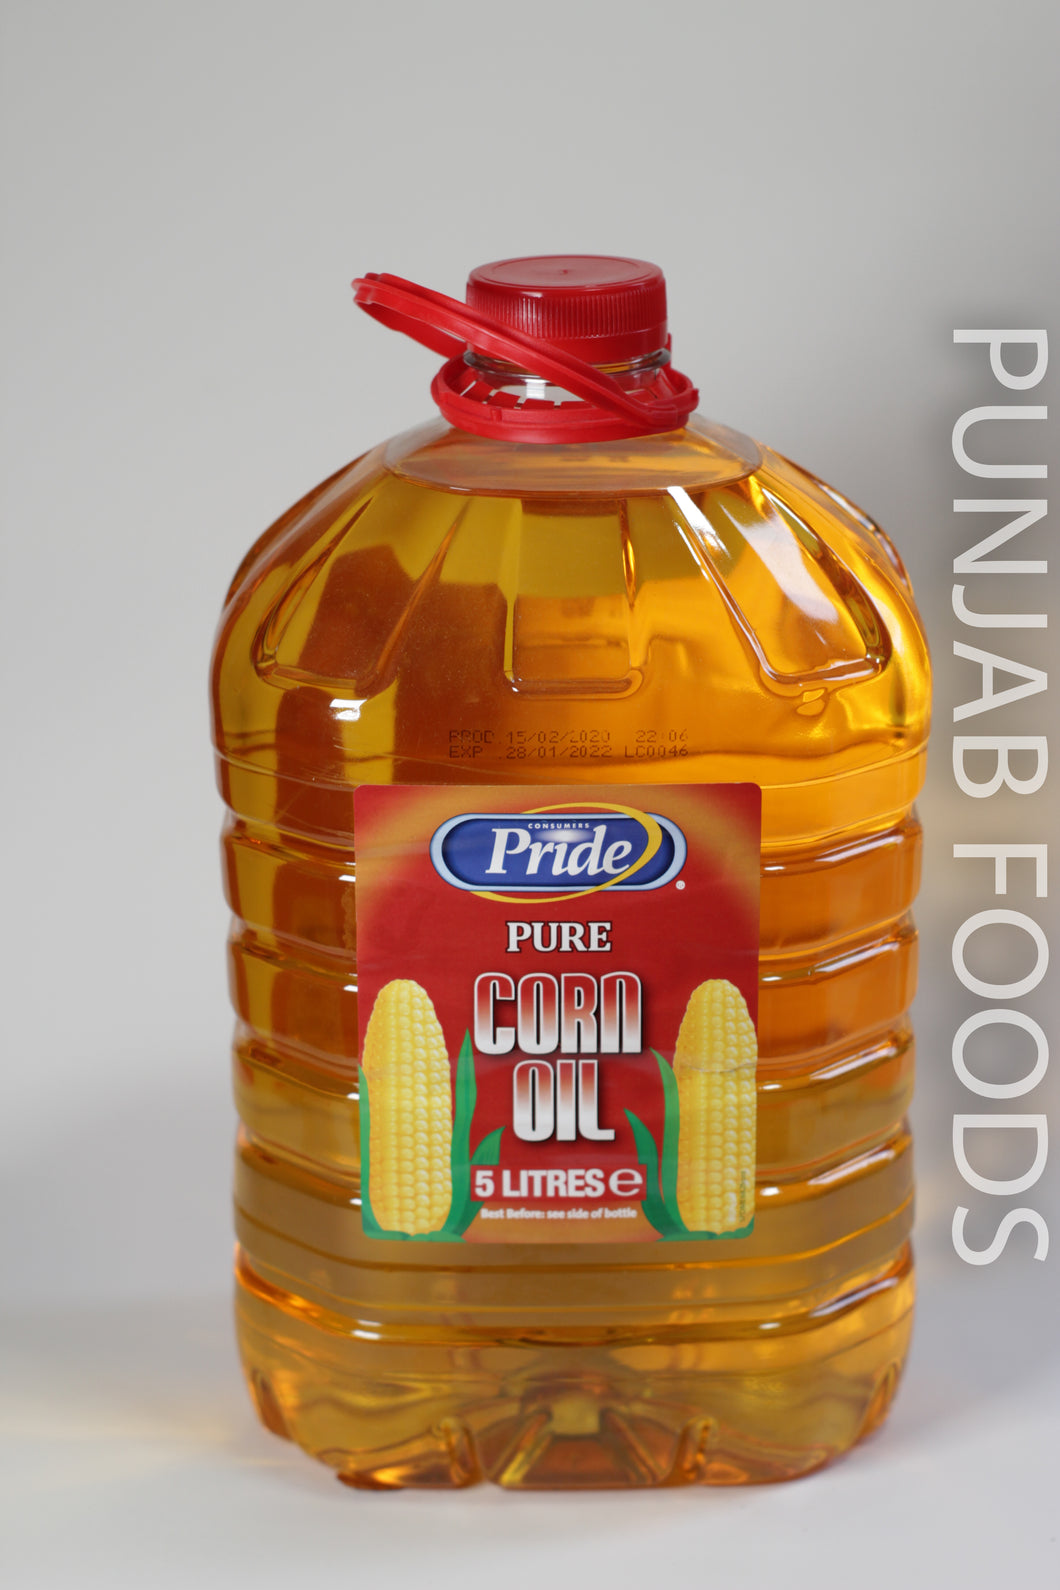 Pride Pure Corn Oil 5LTR